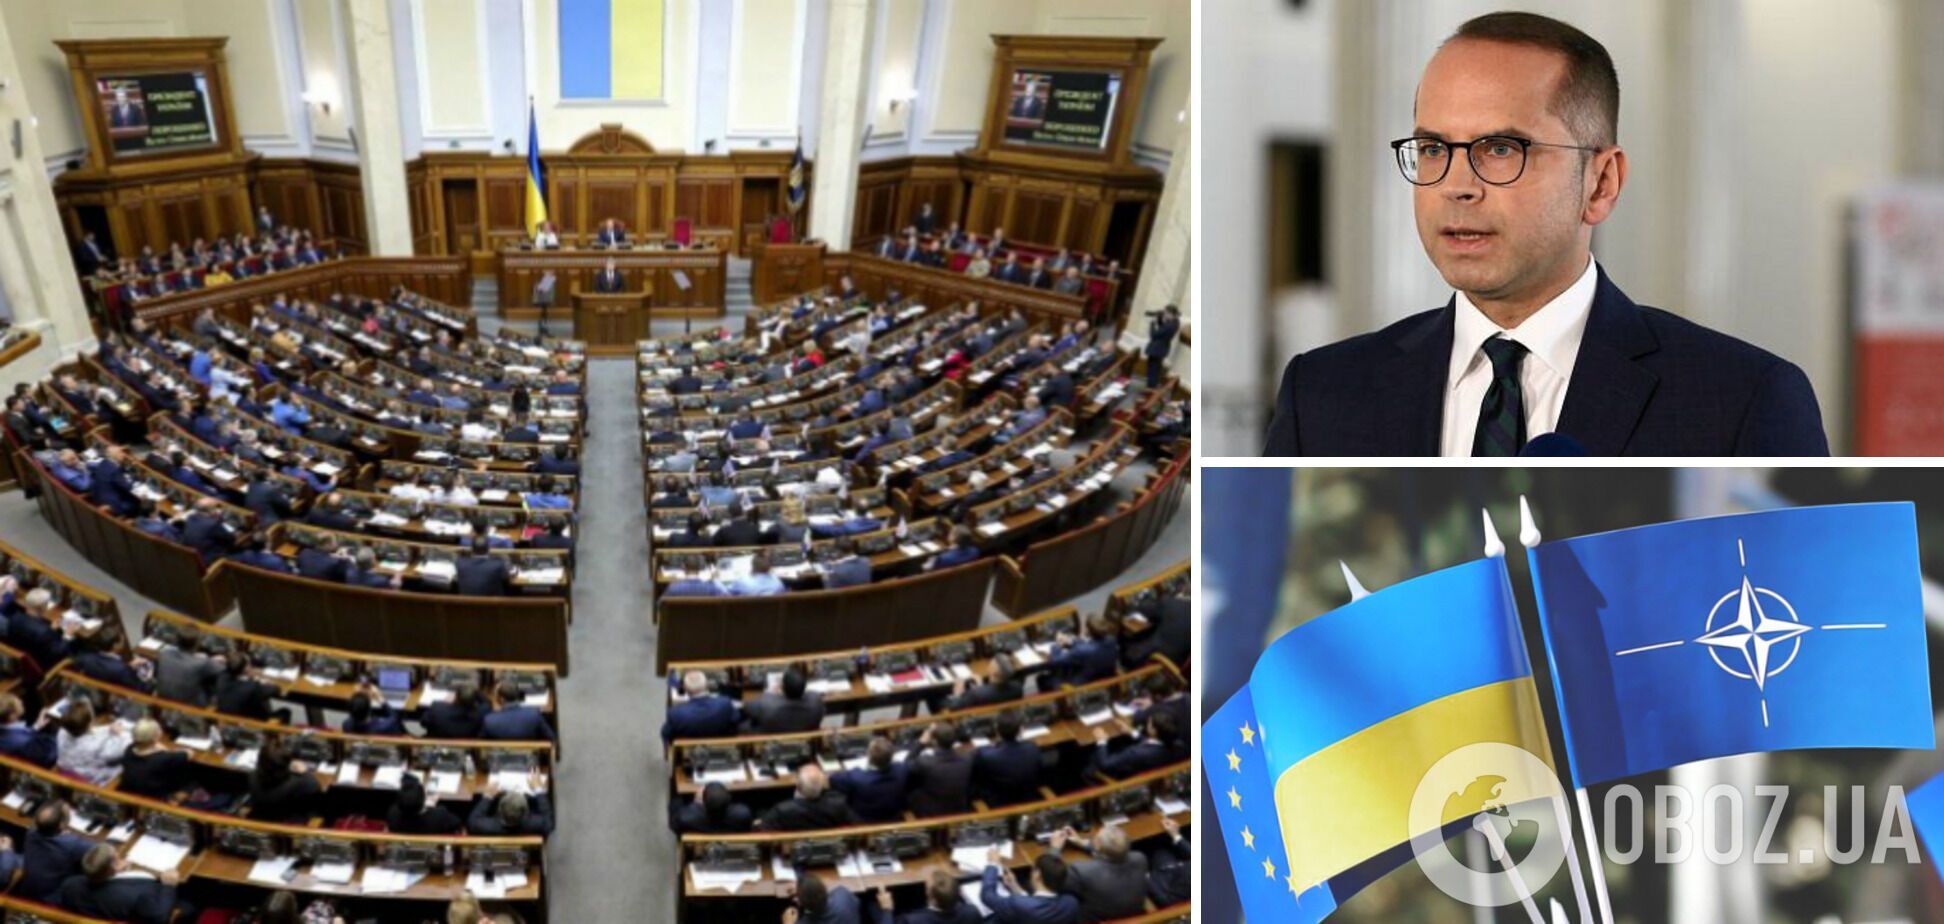 'Україна має стати членом НАТО': президент Парламентської асамблеї Альянсу виступив у Раді